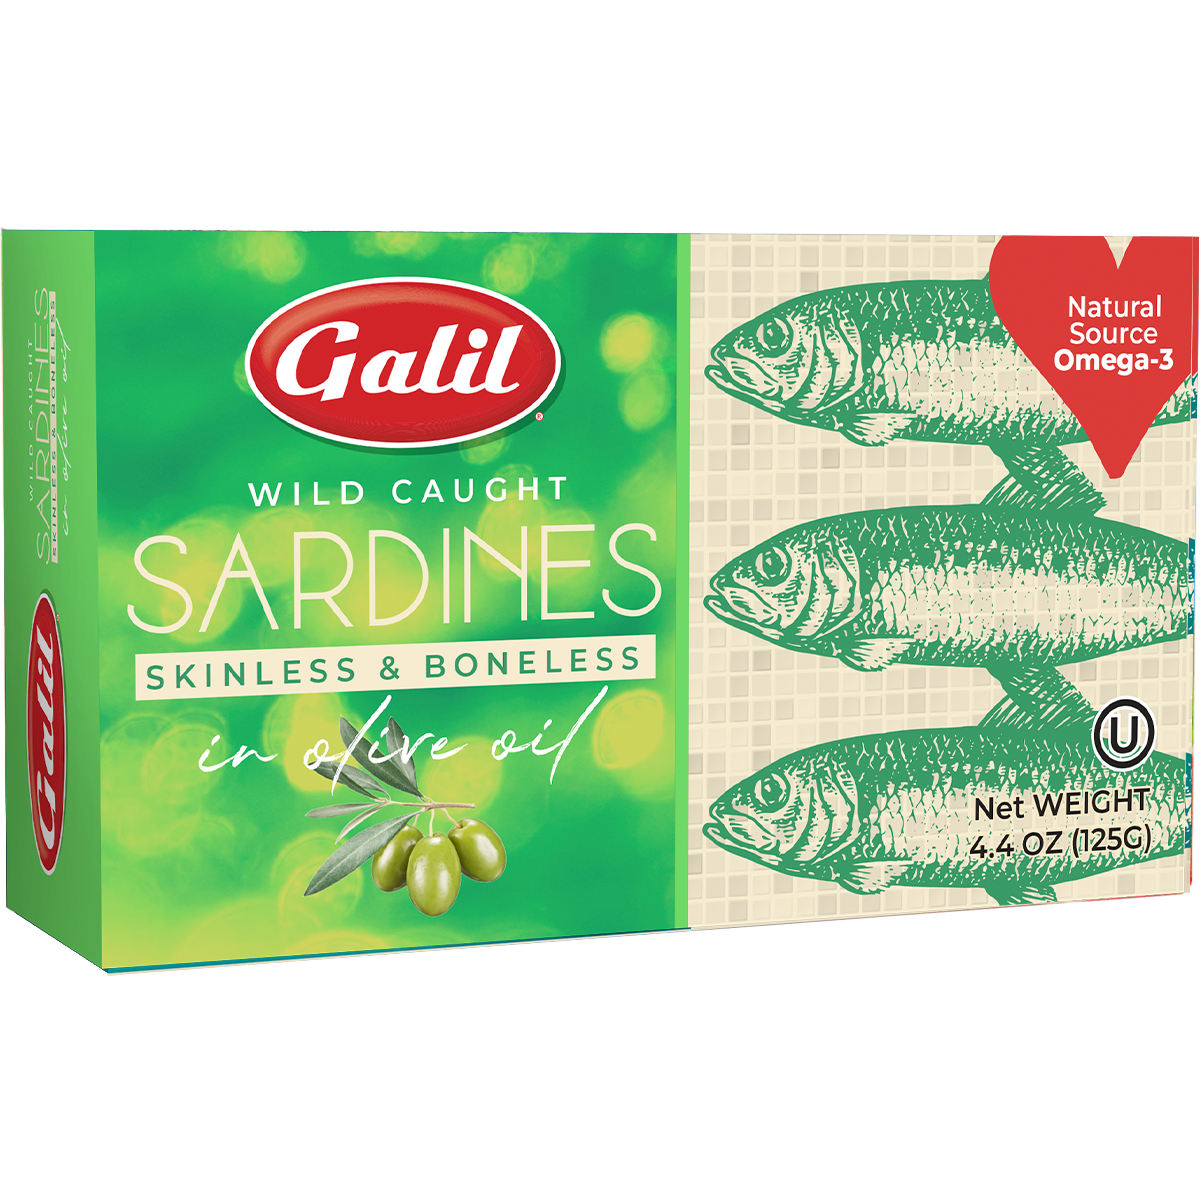 Sardines | Boneless & Skinless in Olive Oil | 4.4 oz | Galil